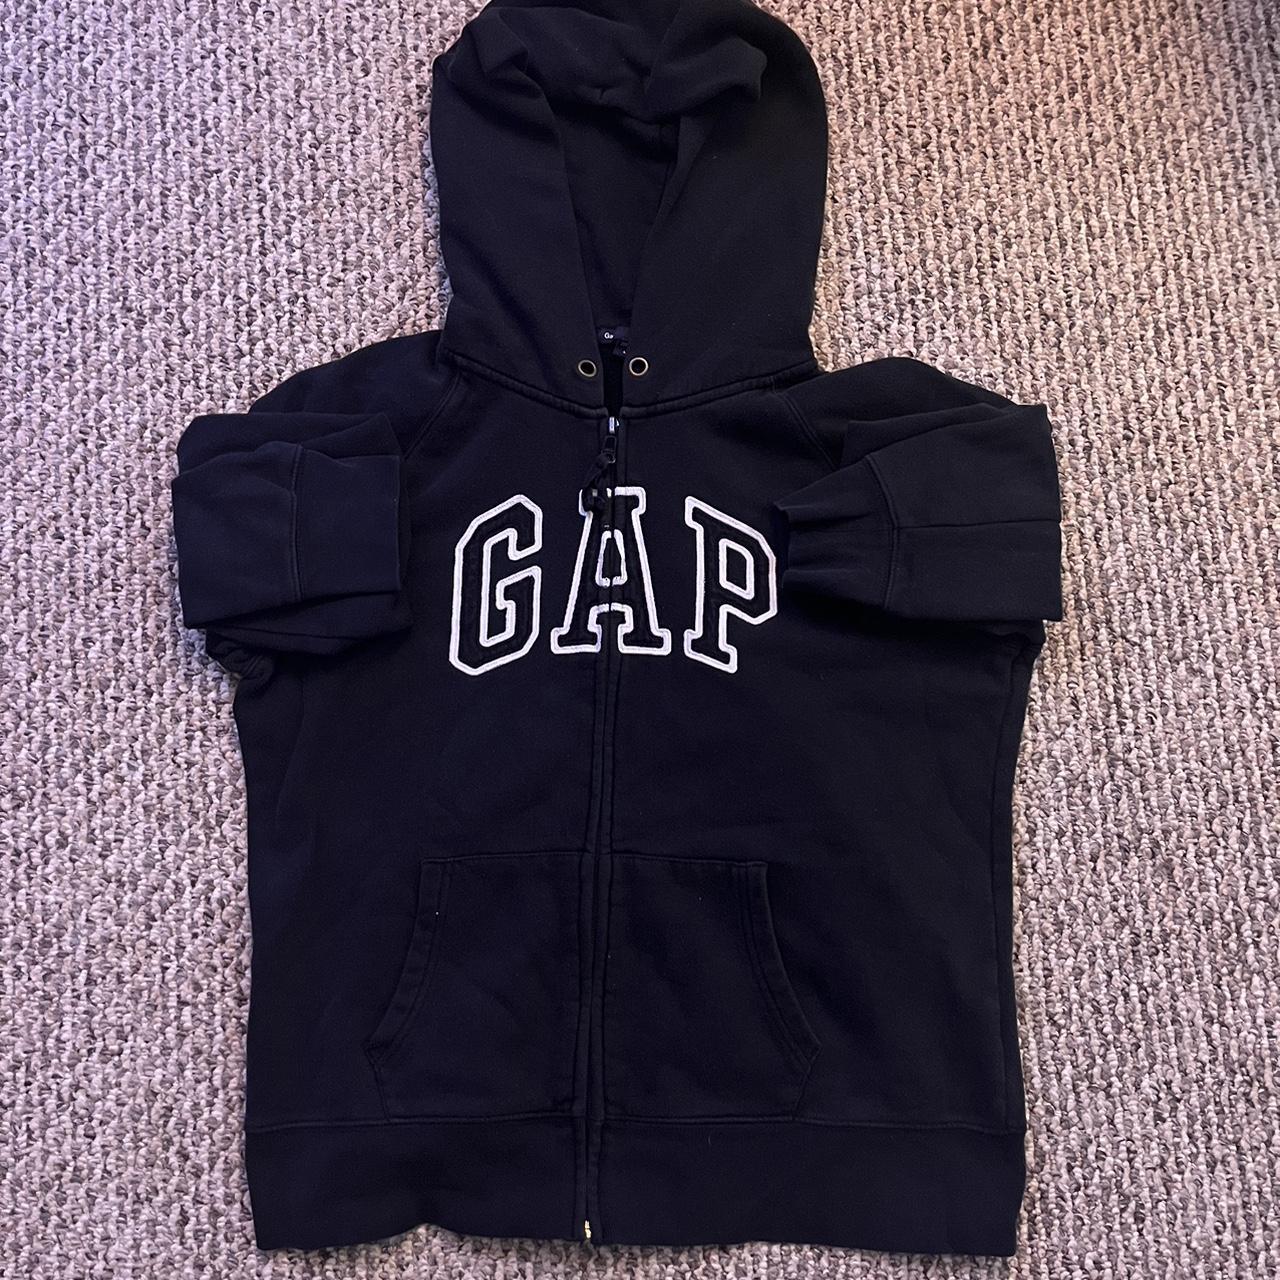 gap zip up hoodie size large youth #hoodie... - Depop